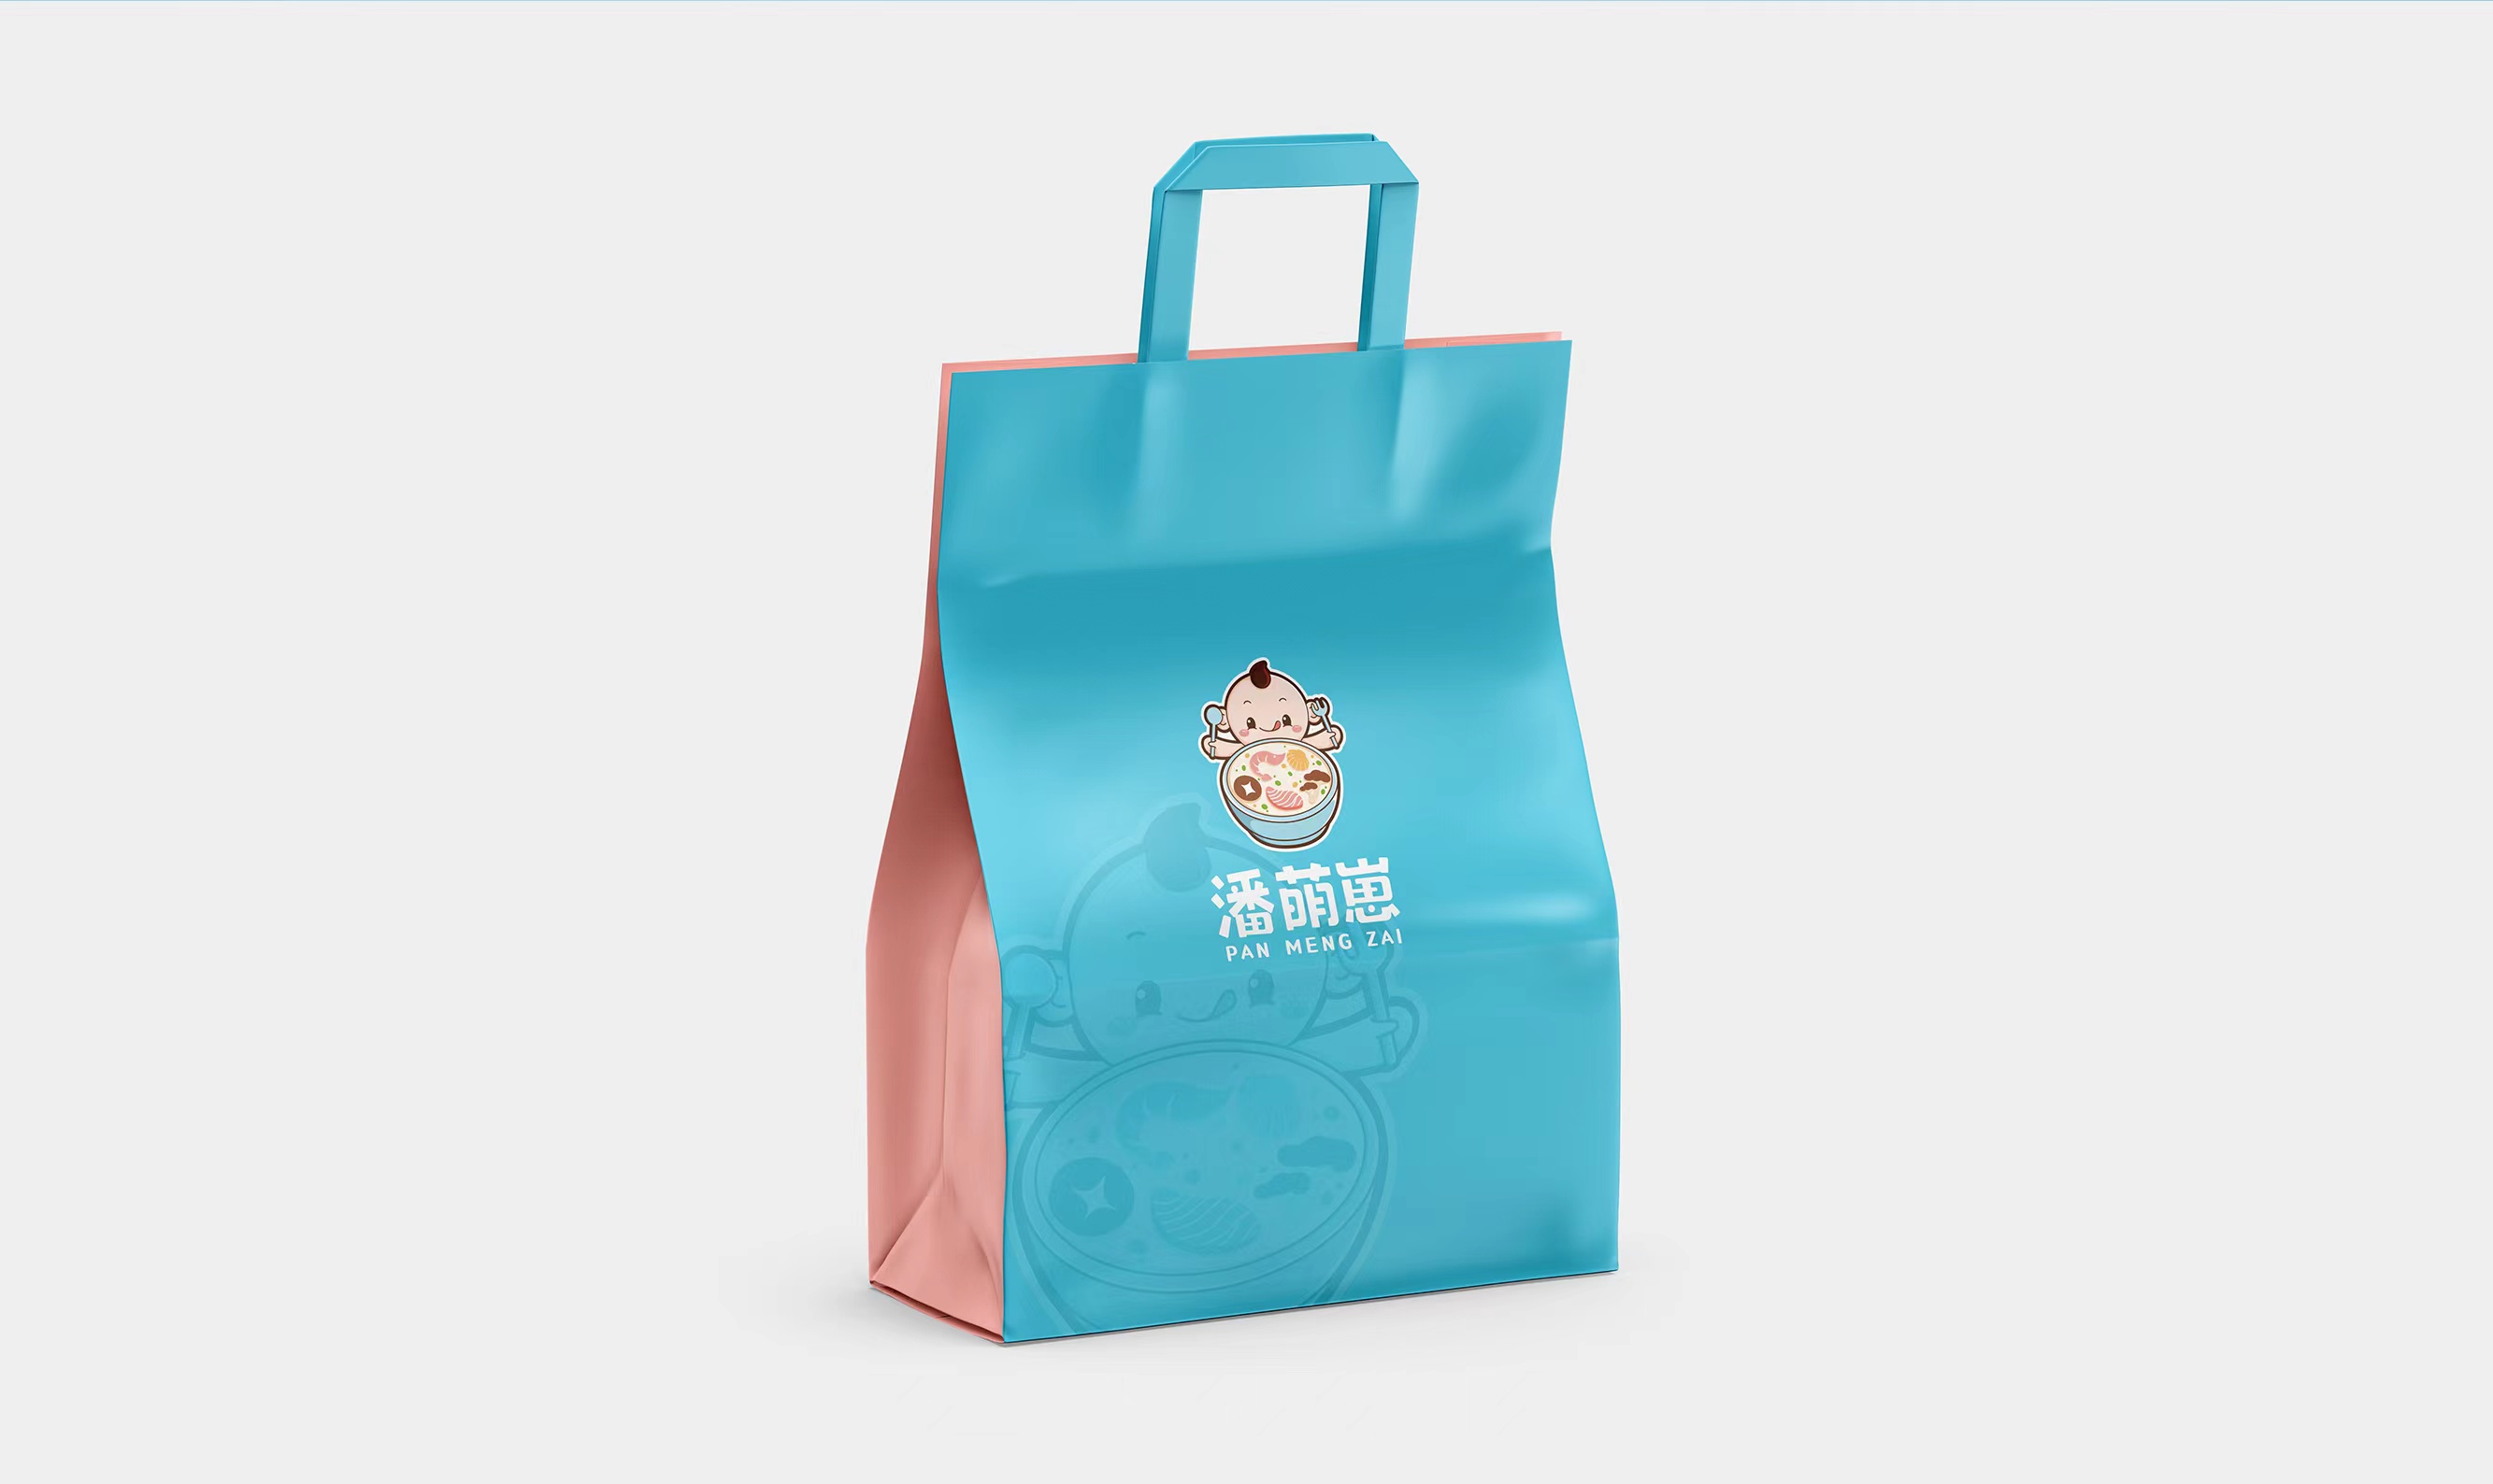 潘萌崽营养餐-儿童辅食产品的品牌及包装设计 产品包装设计 第13张